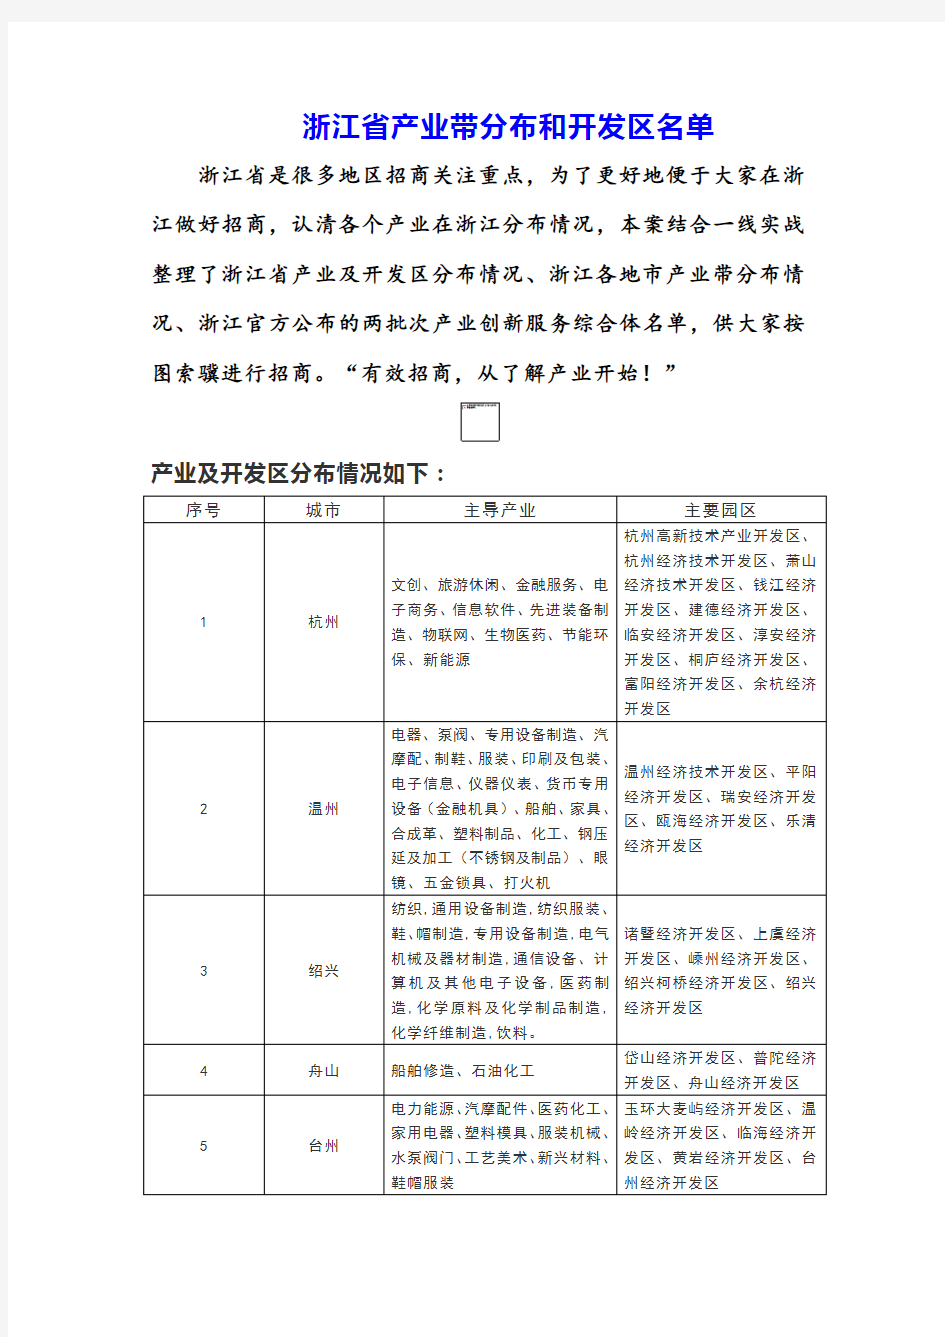 浙江省产业带分布和开发区名单